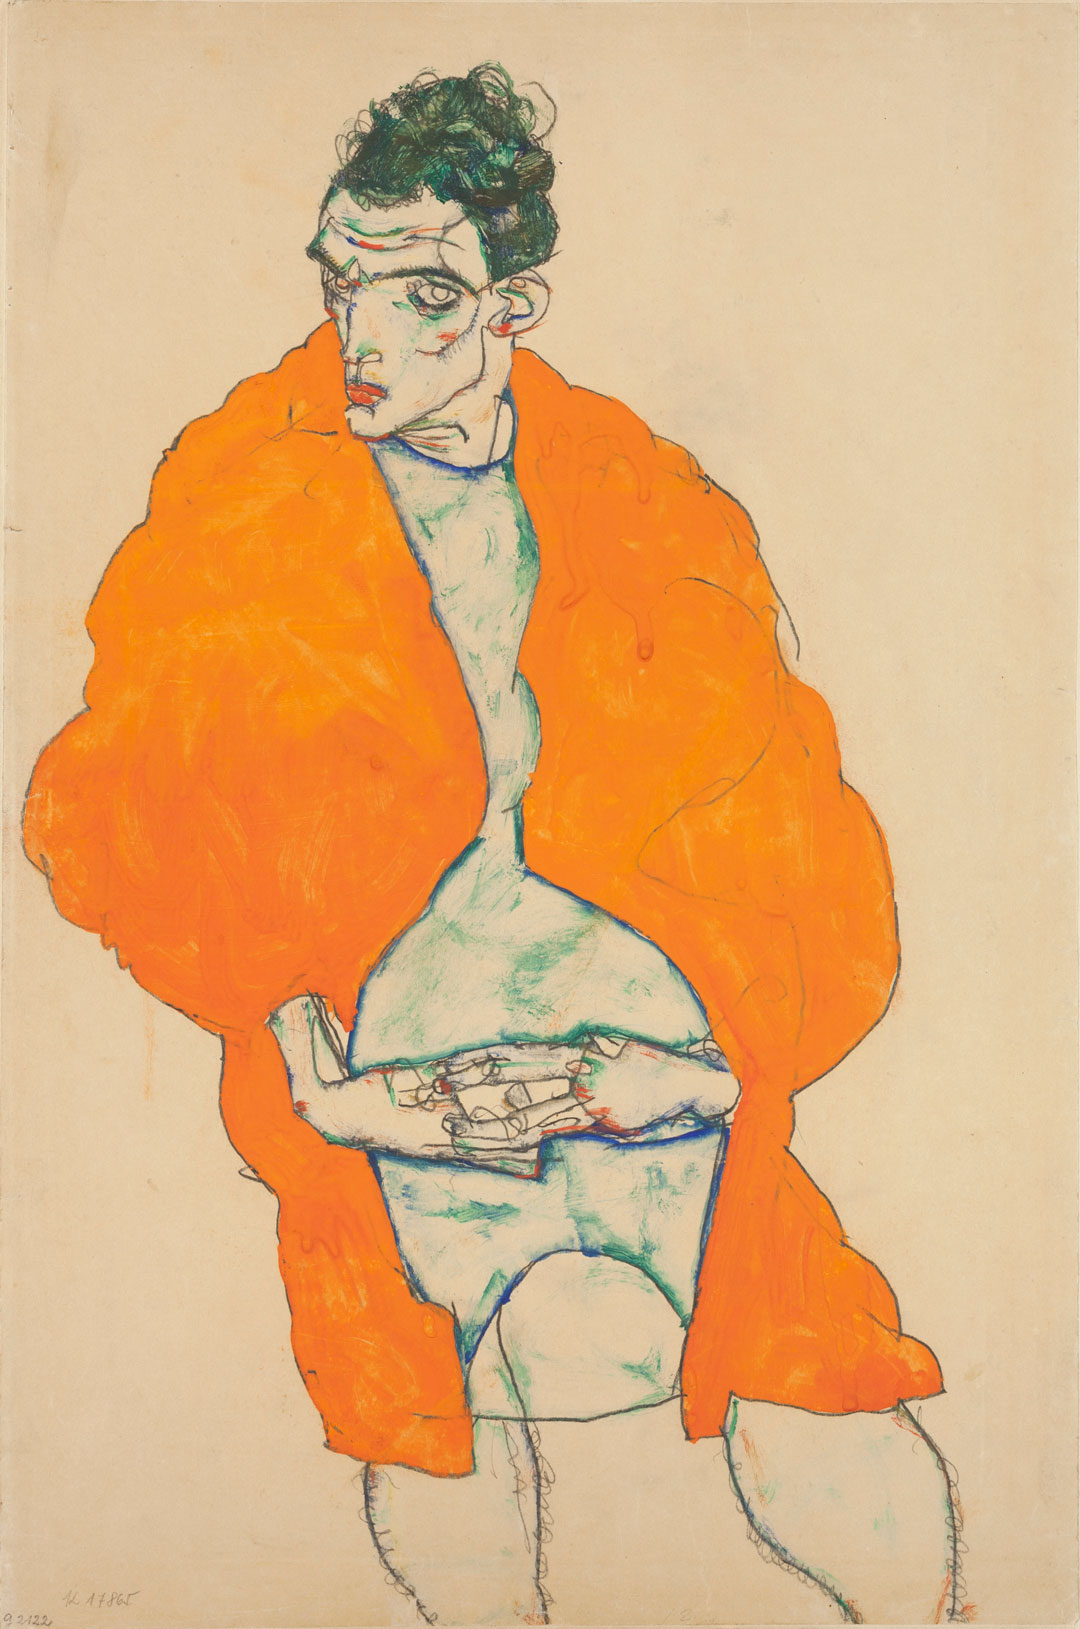 Standing male figure, self-portrait (1914) by Egon Schiele